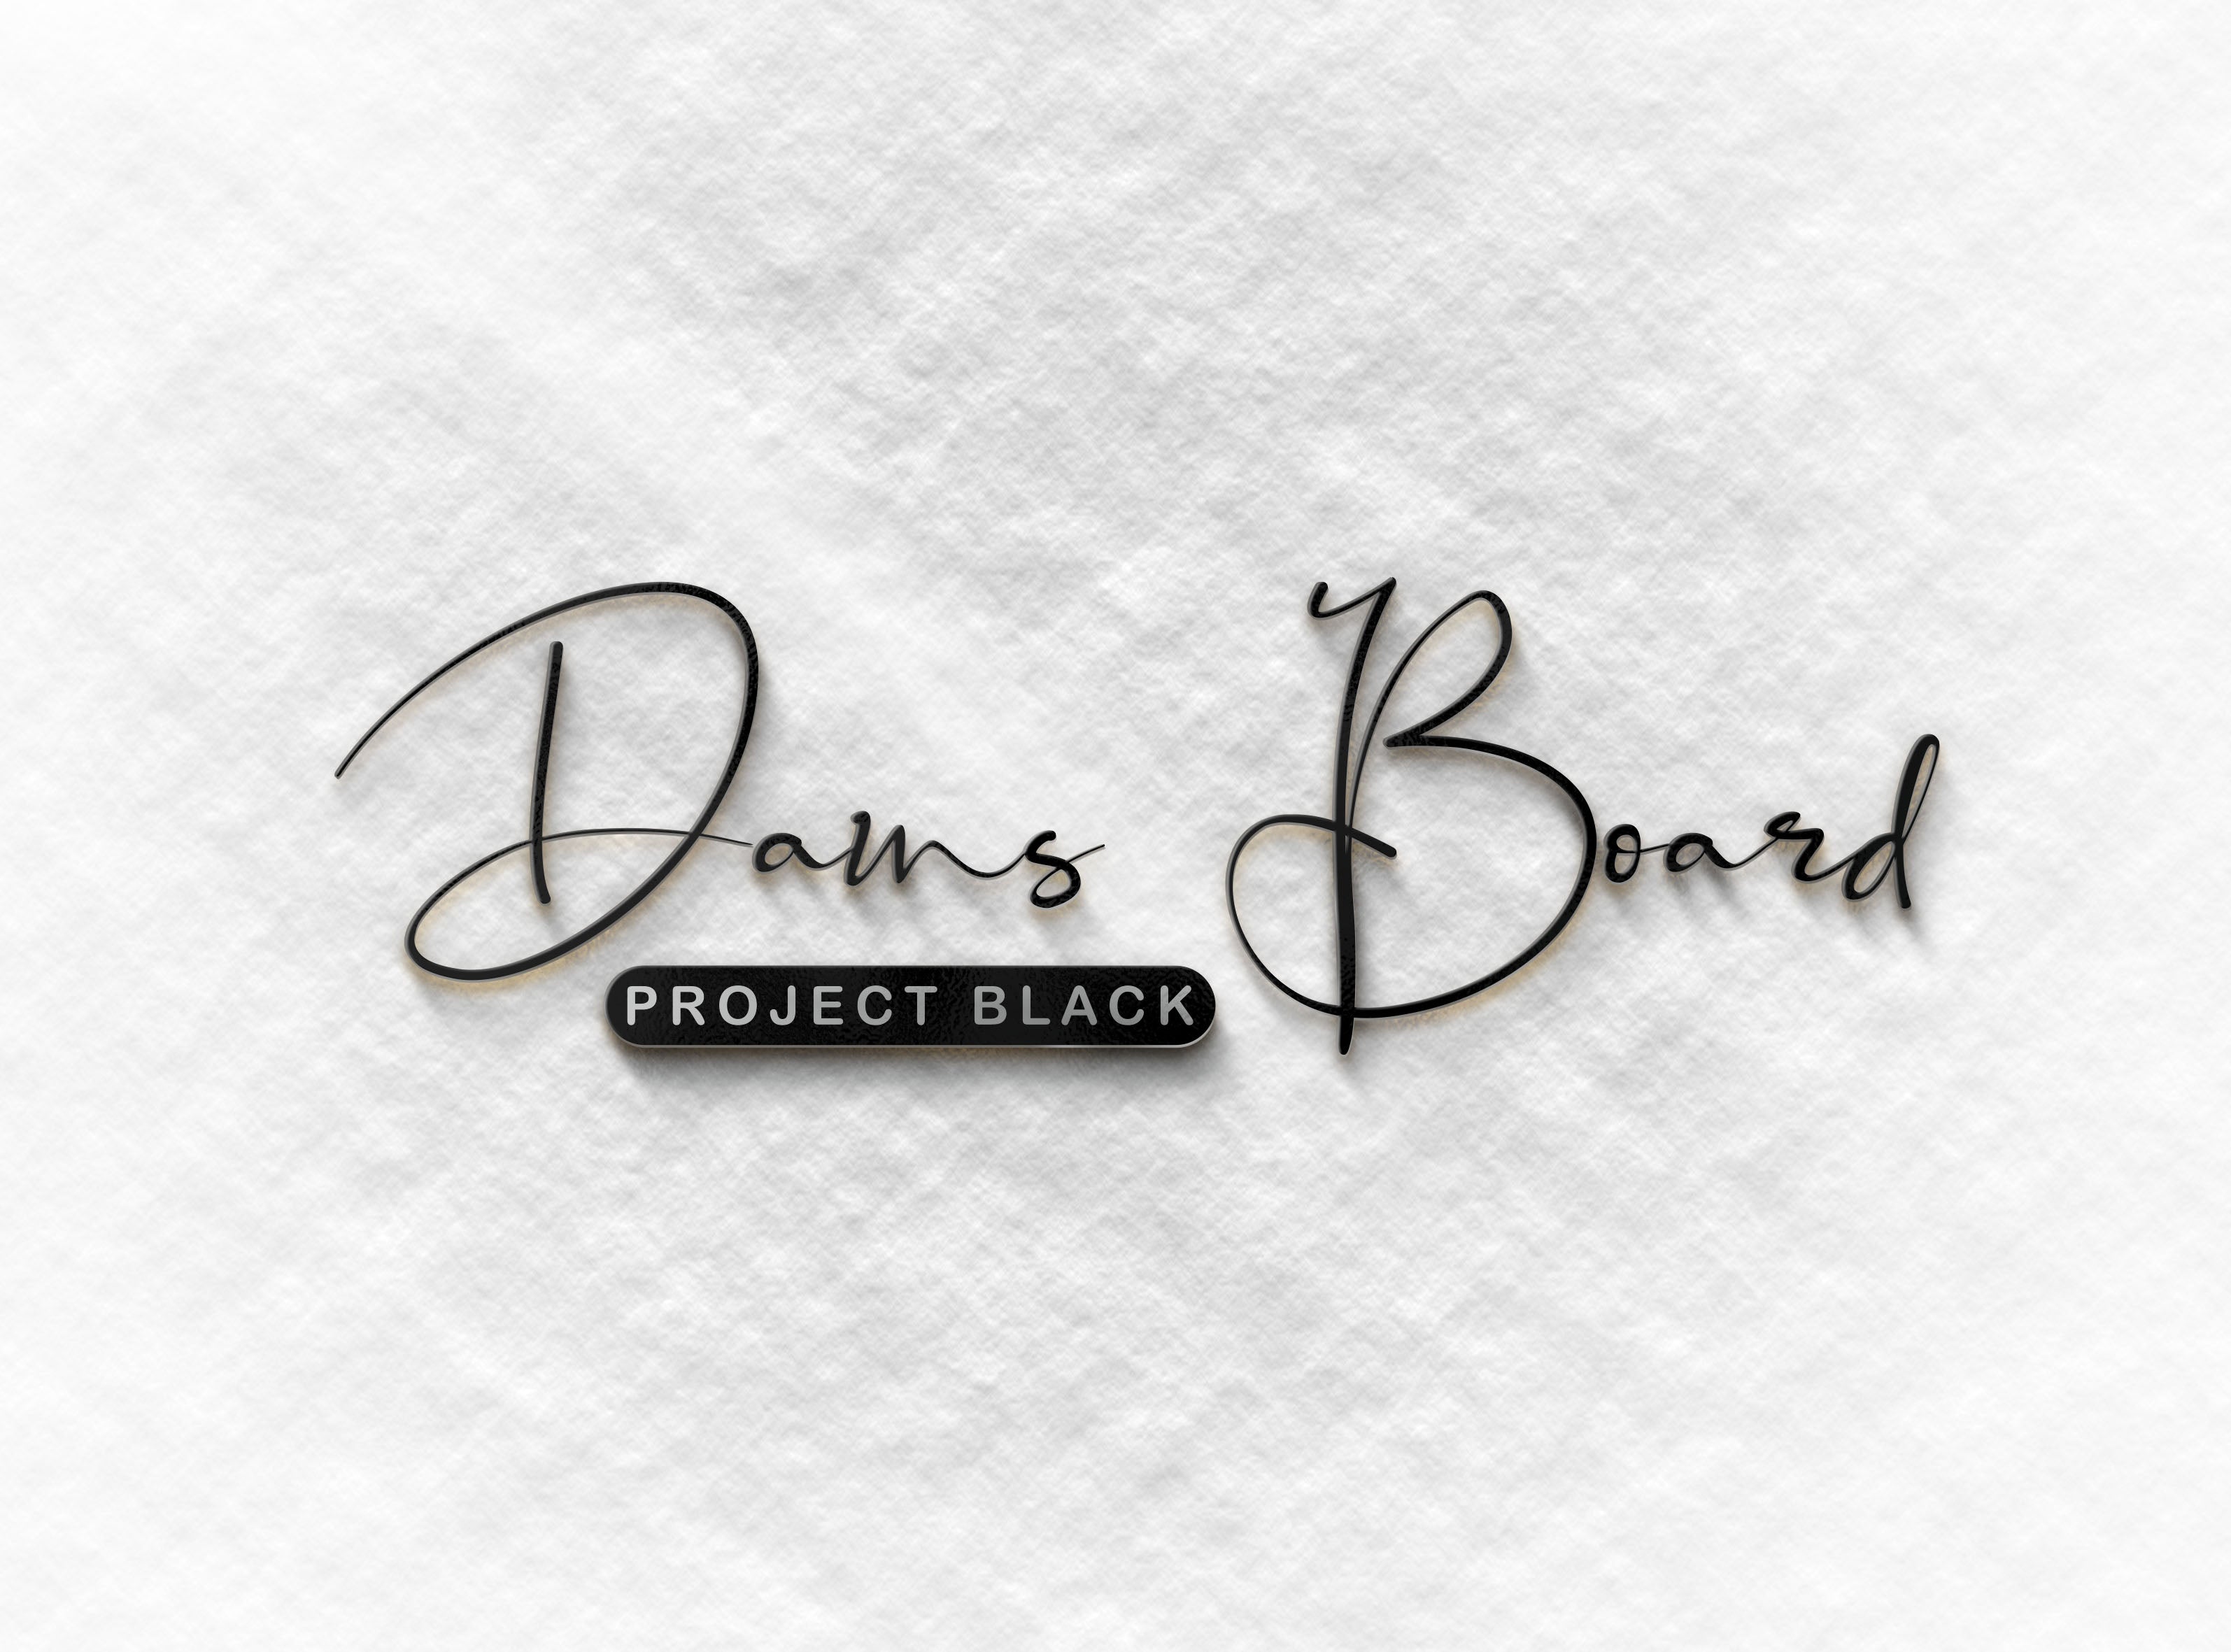 Balance Board - Dans Board Project Black review